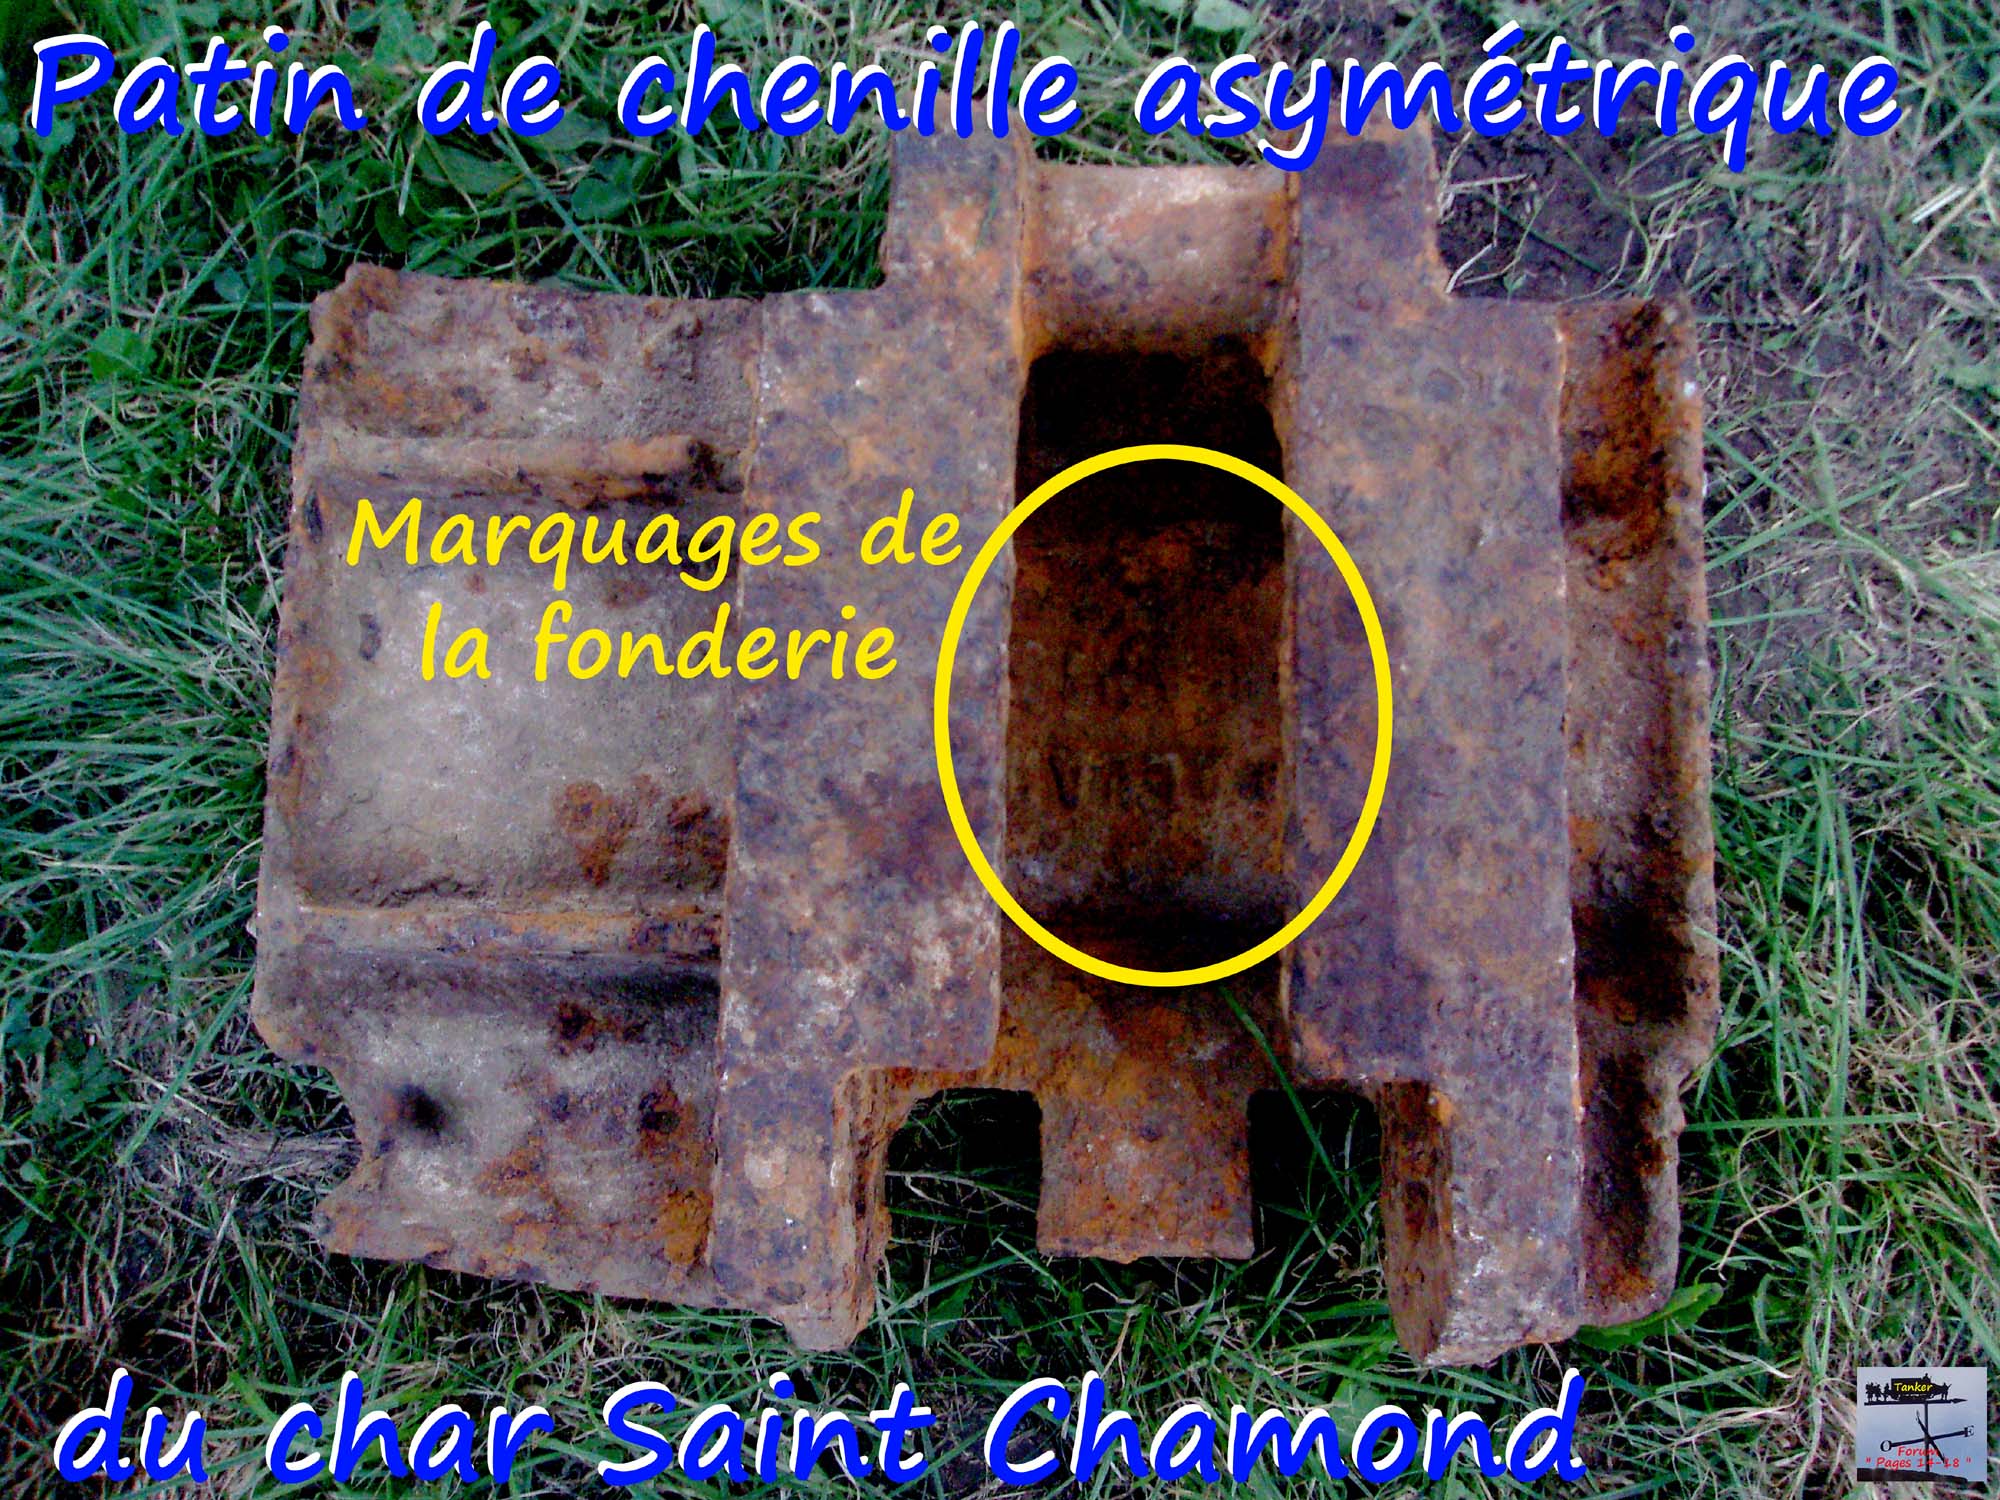 06 - Patin de chenille St Chamond asymétrique.jpg